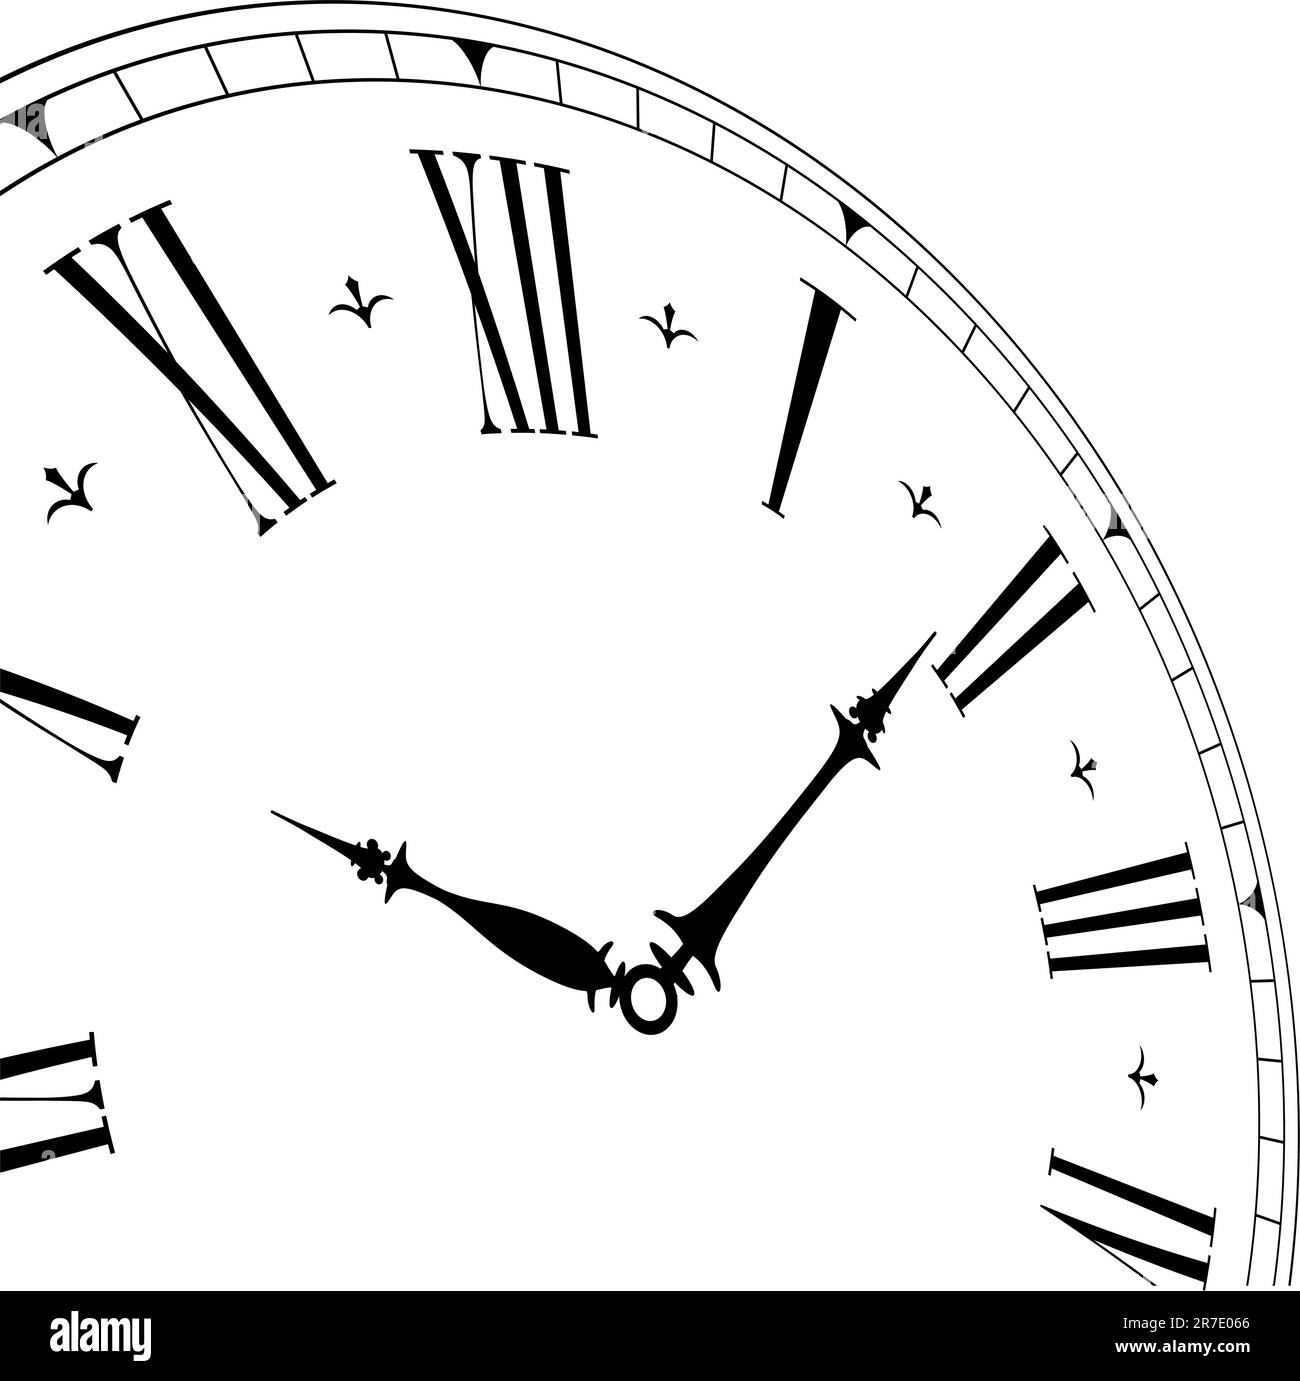 illustration détaillée d'une ancienne face d'horloge avec angle de perspective, vecteur eps8 Illustration de Vecteur